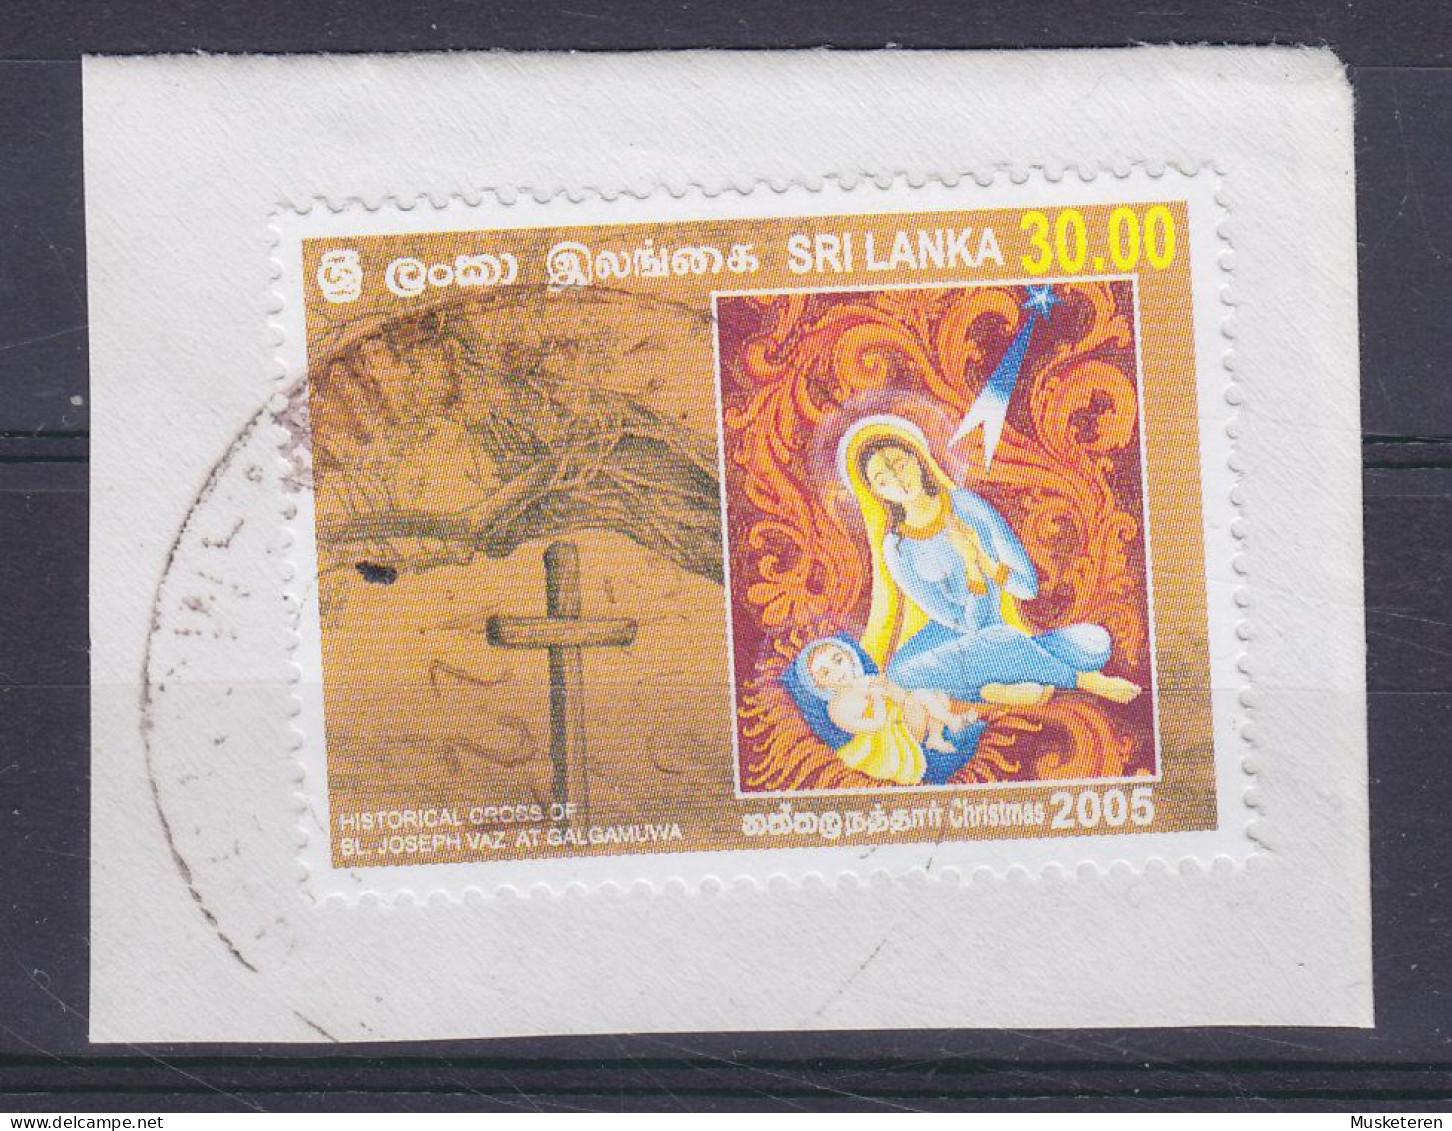 Sri Lanka 2005 Mi. 1519, 30.00 (R) Weihnachten Christmas Jul Noel Natale Navidad Maria Mit Kind On Clip - Sri Lanka (Ceylon) (1948-...)